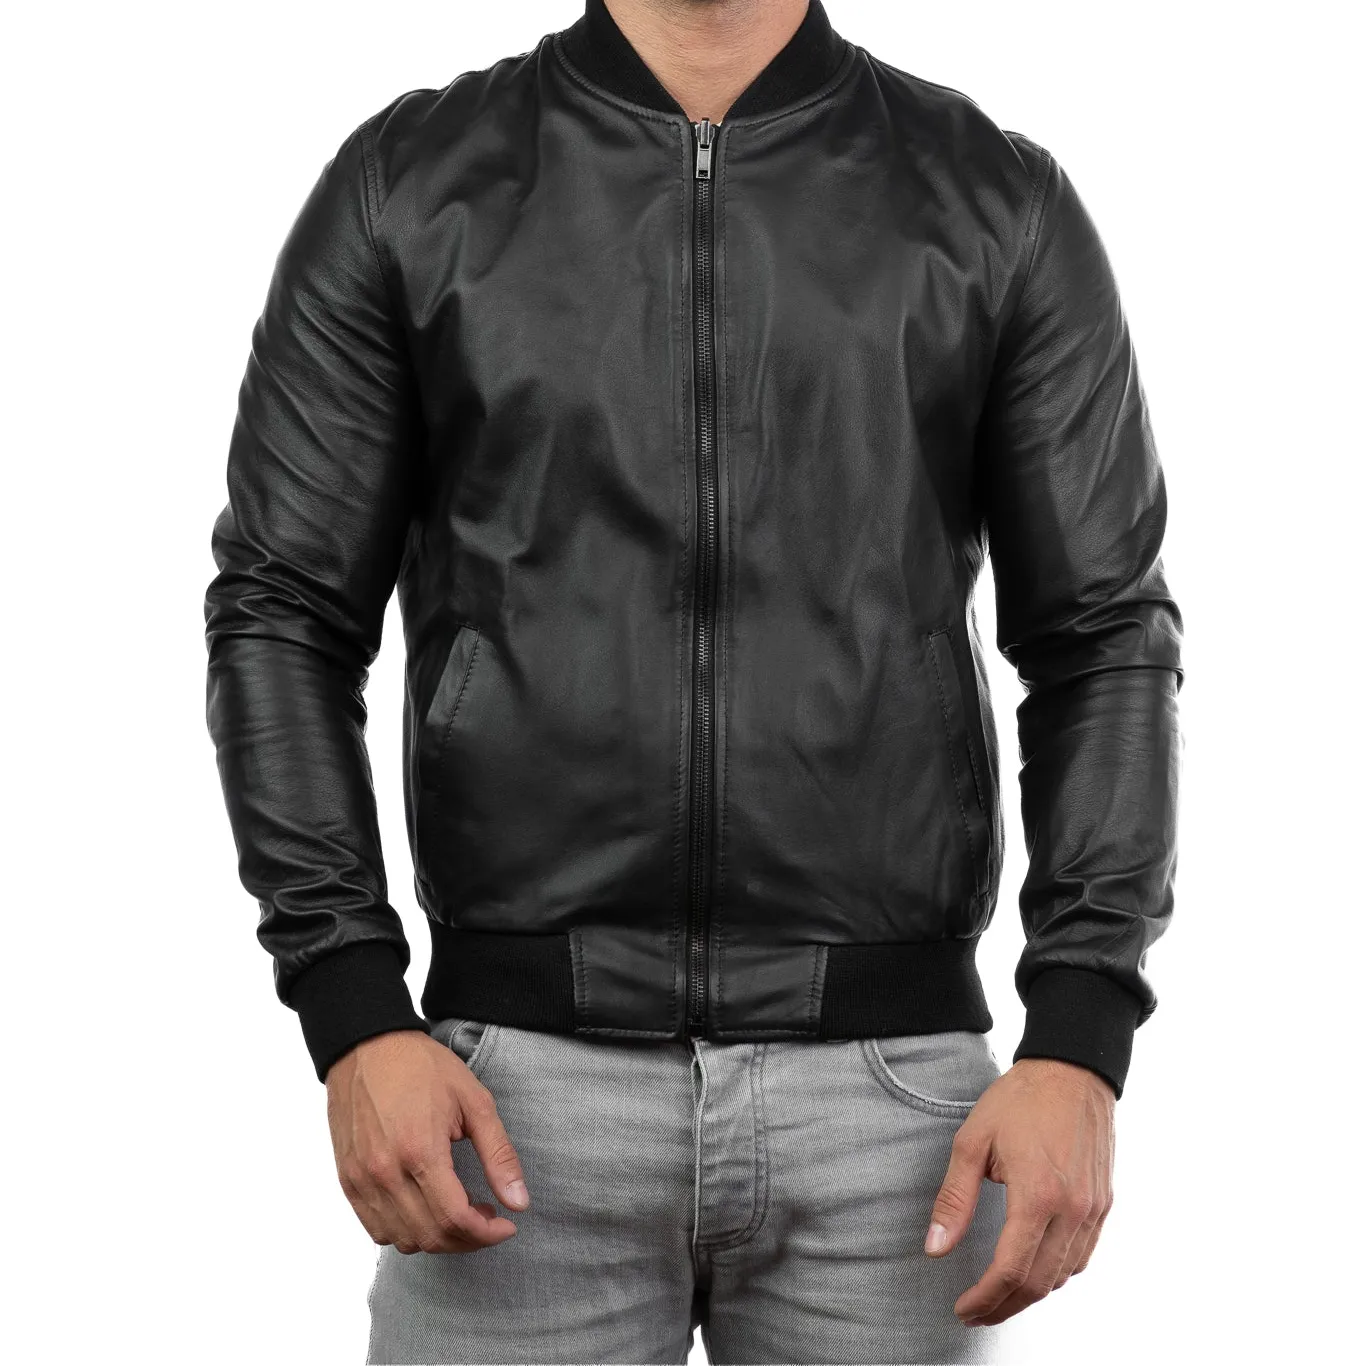 men leather jacket style